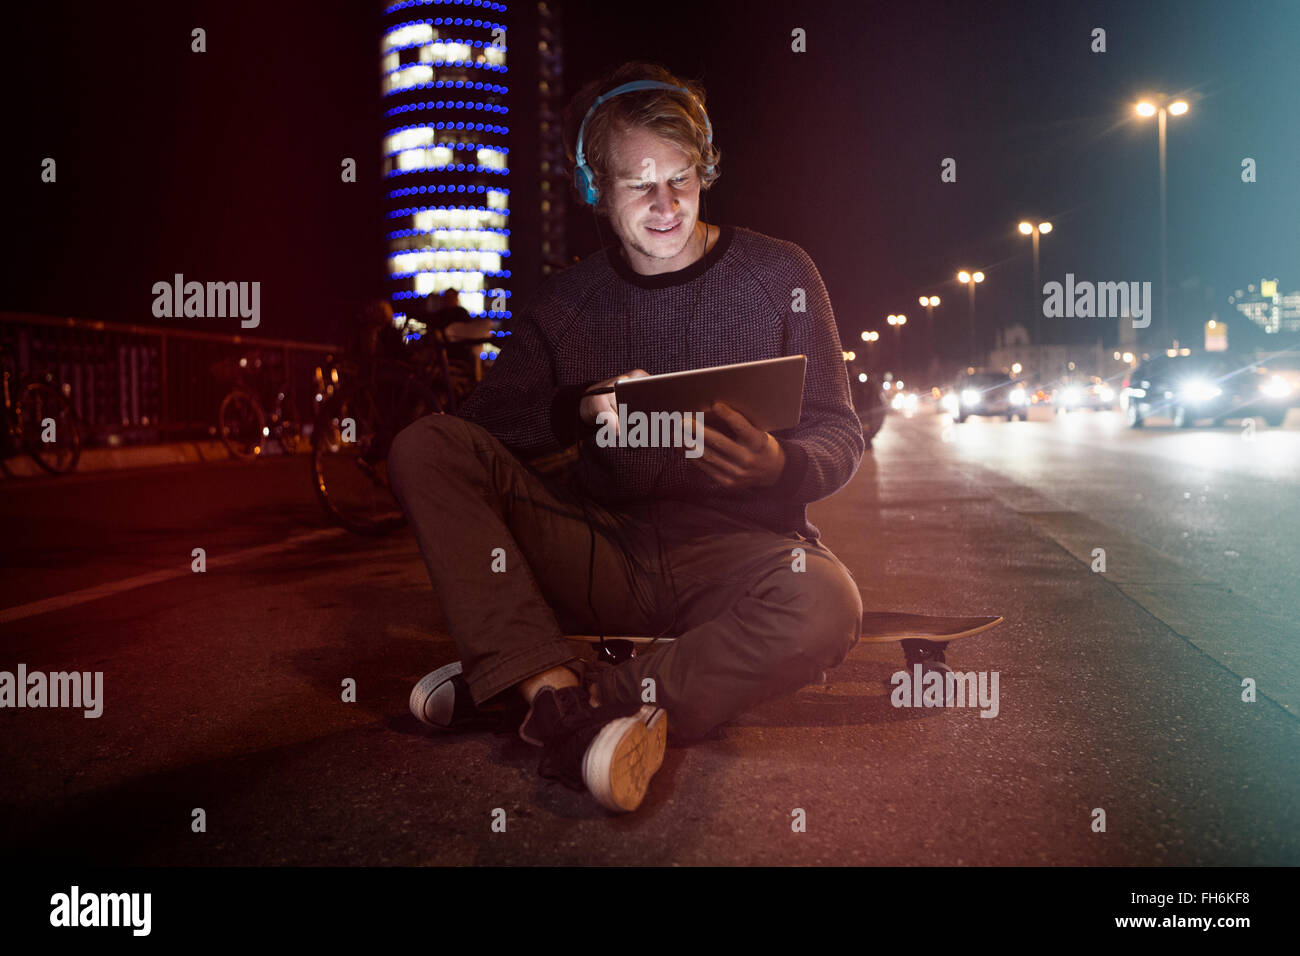 Alemania, Munich, Hombre con auriculares sentado en su patineta usando tableta digital por la noche Foto de stock